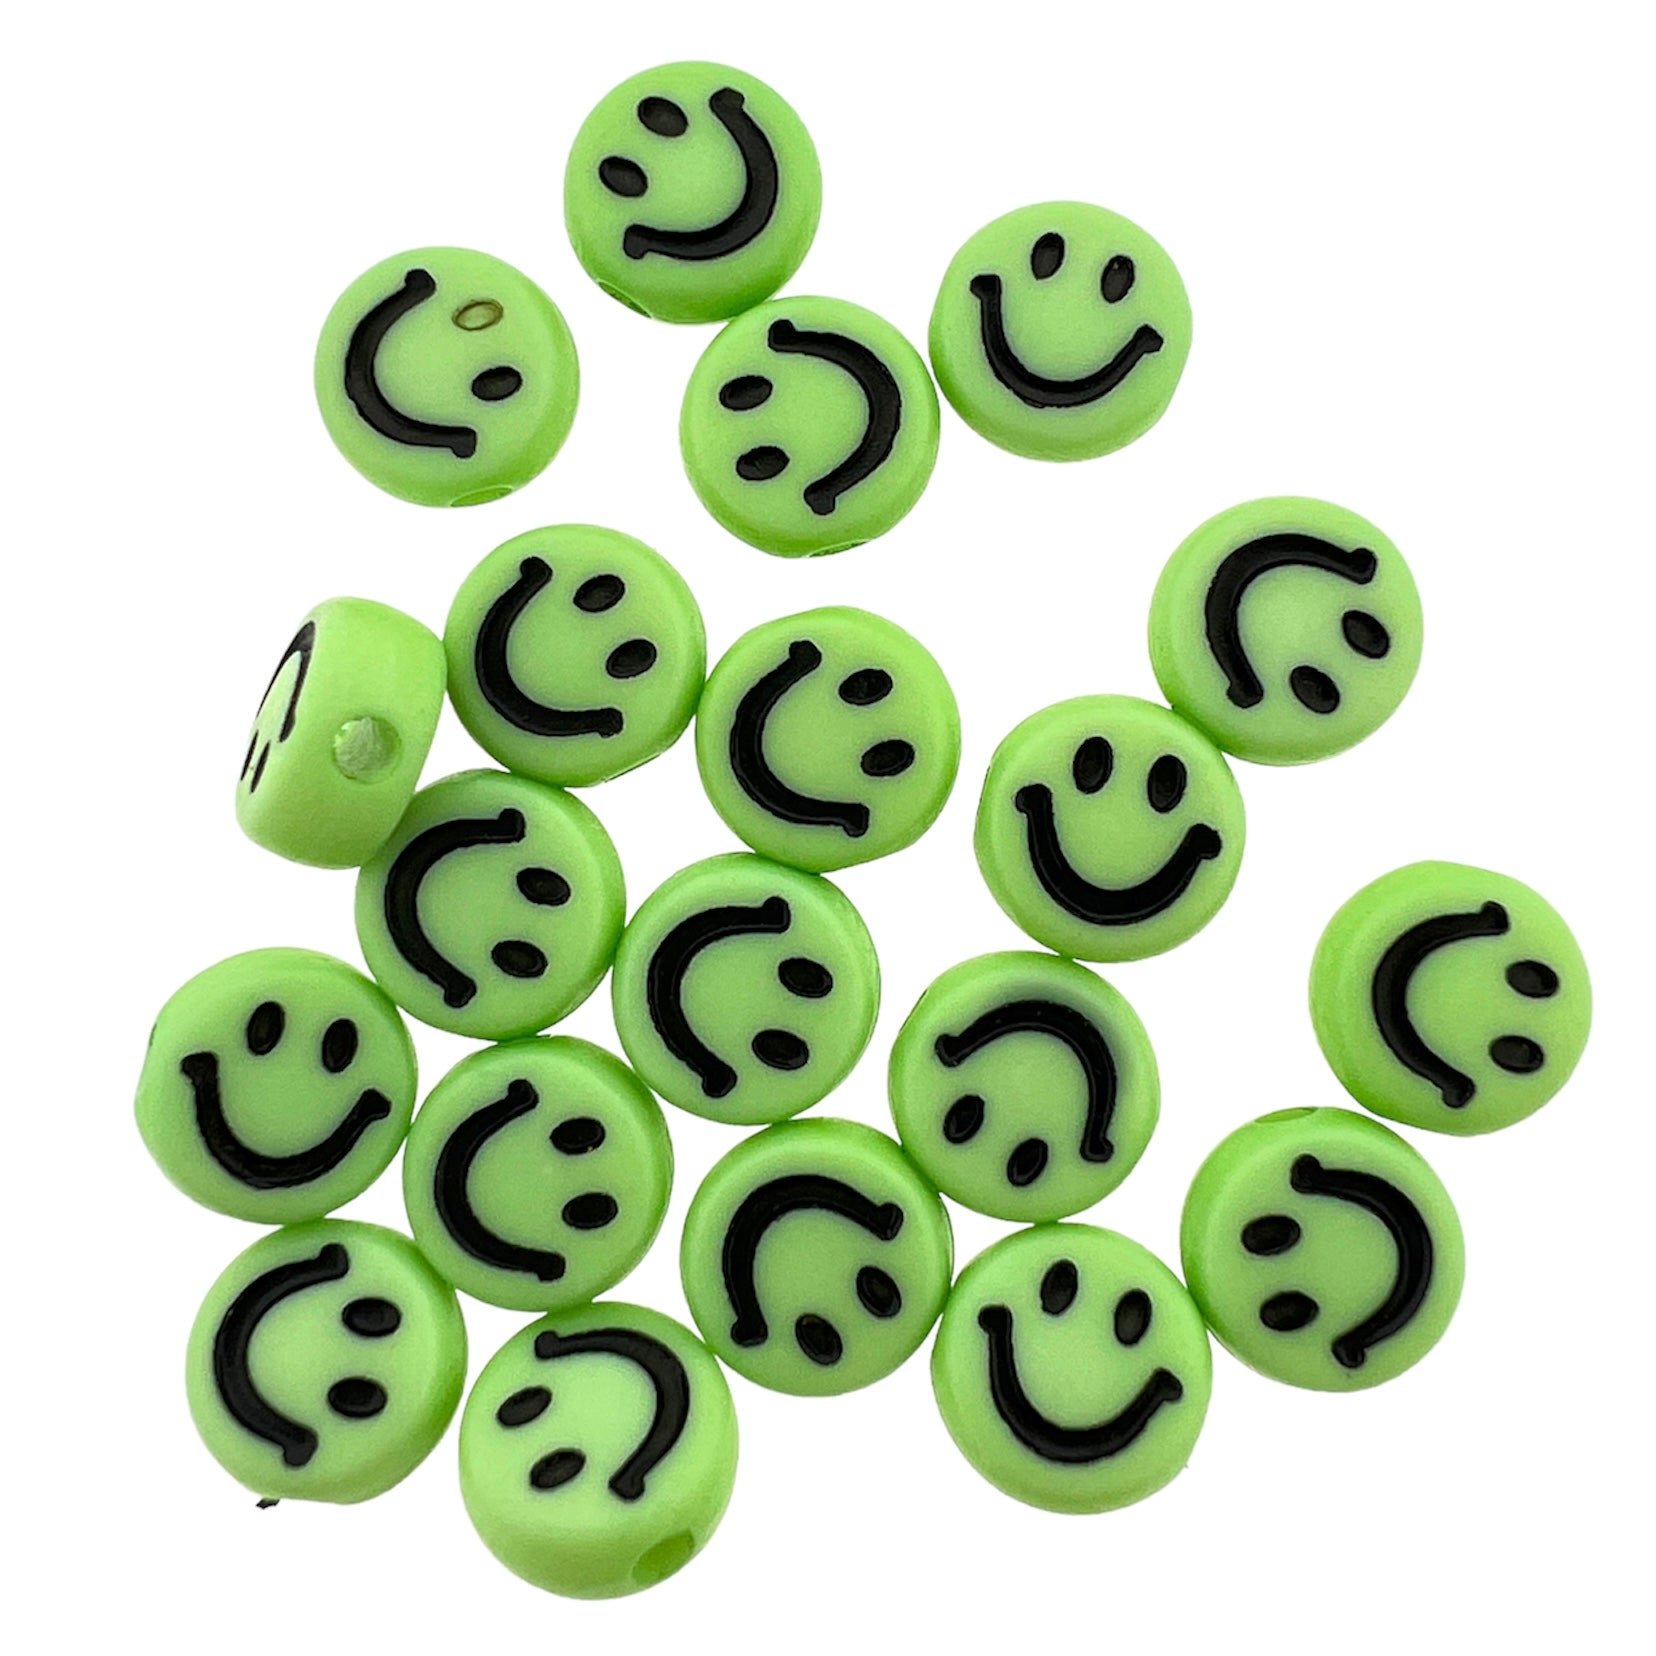 Acryl kralen smiley groen-zwart 7mm - 20 stuks-Kralen-Kraaltjes van Renate